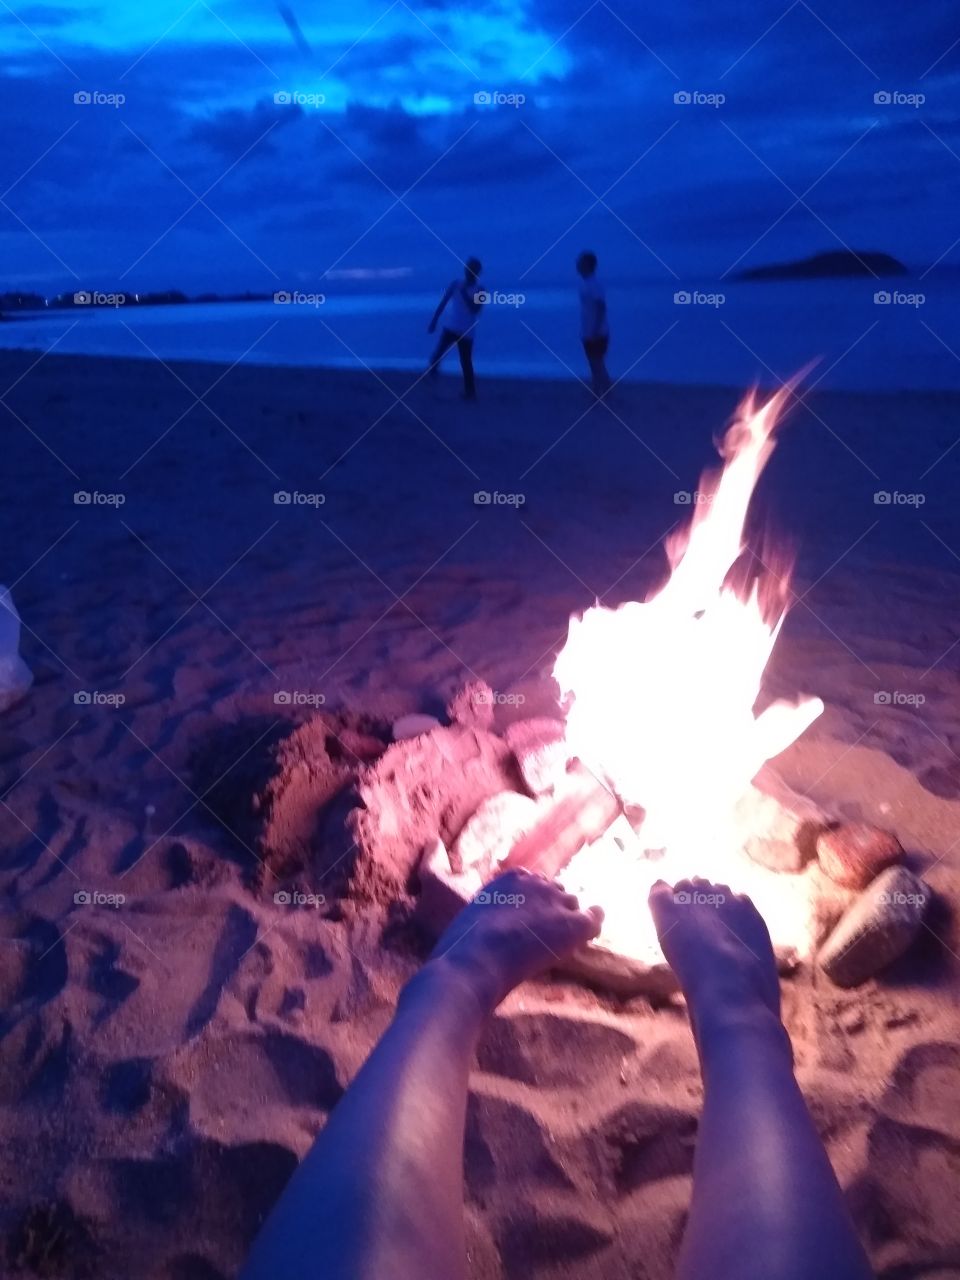 Flames keeping  feet warm on north Scotland beach my